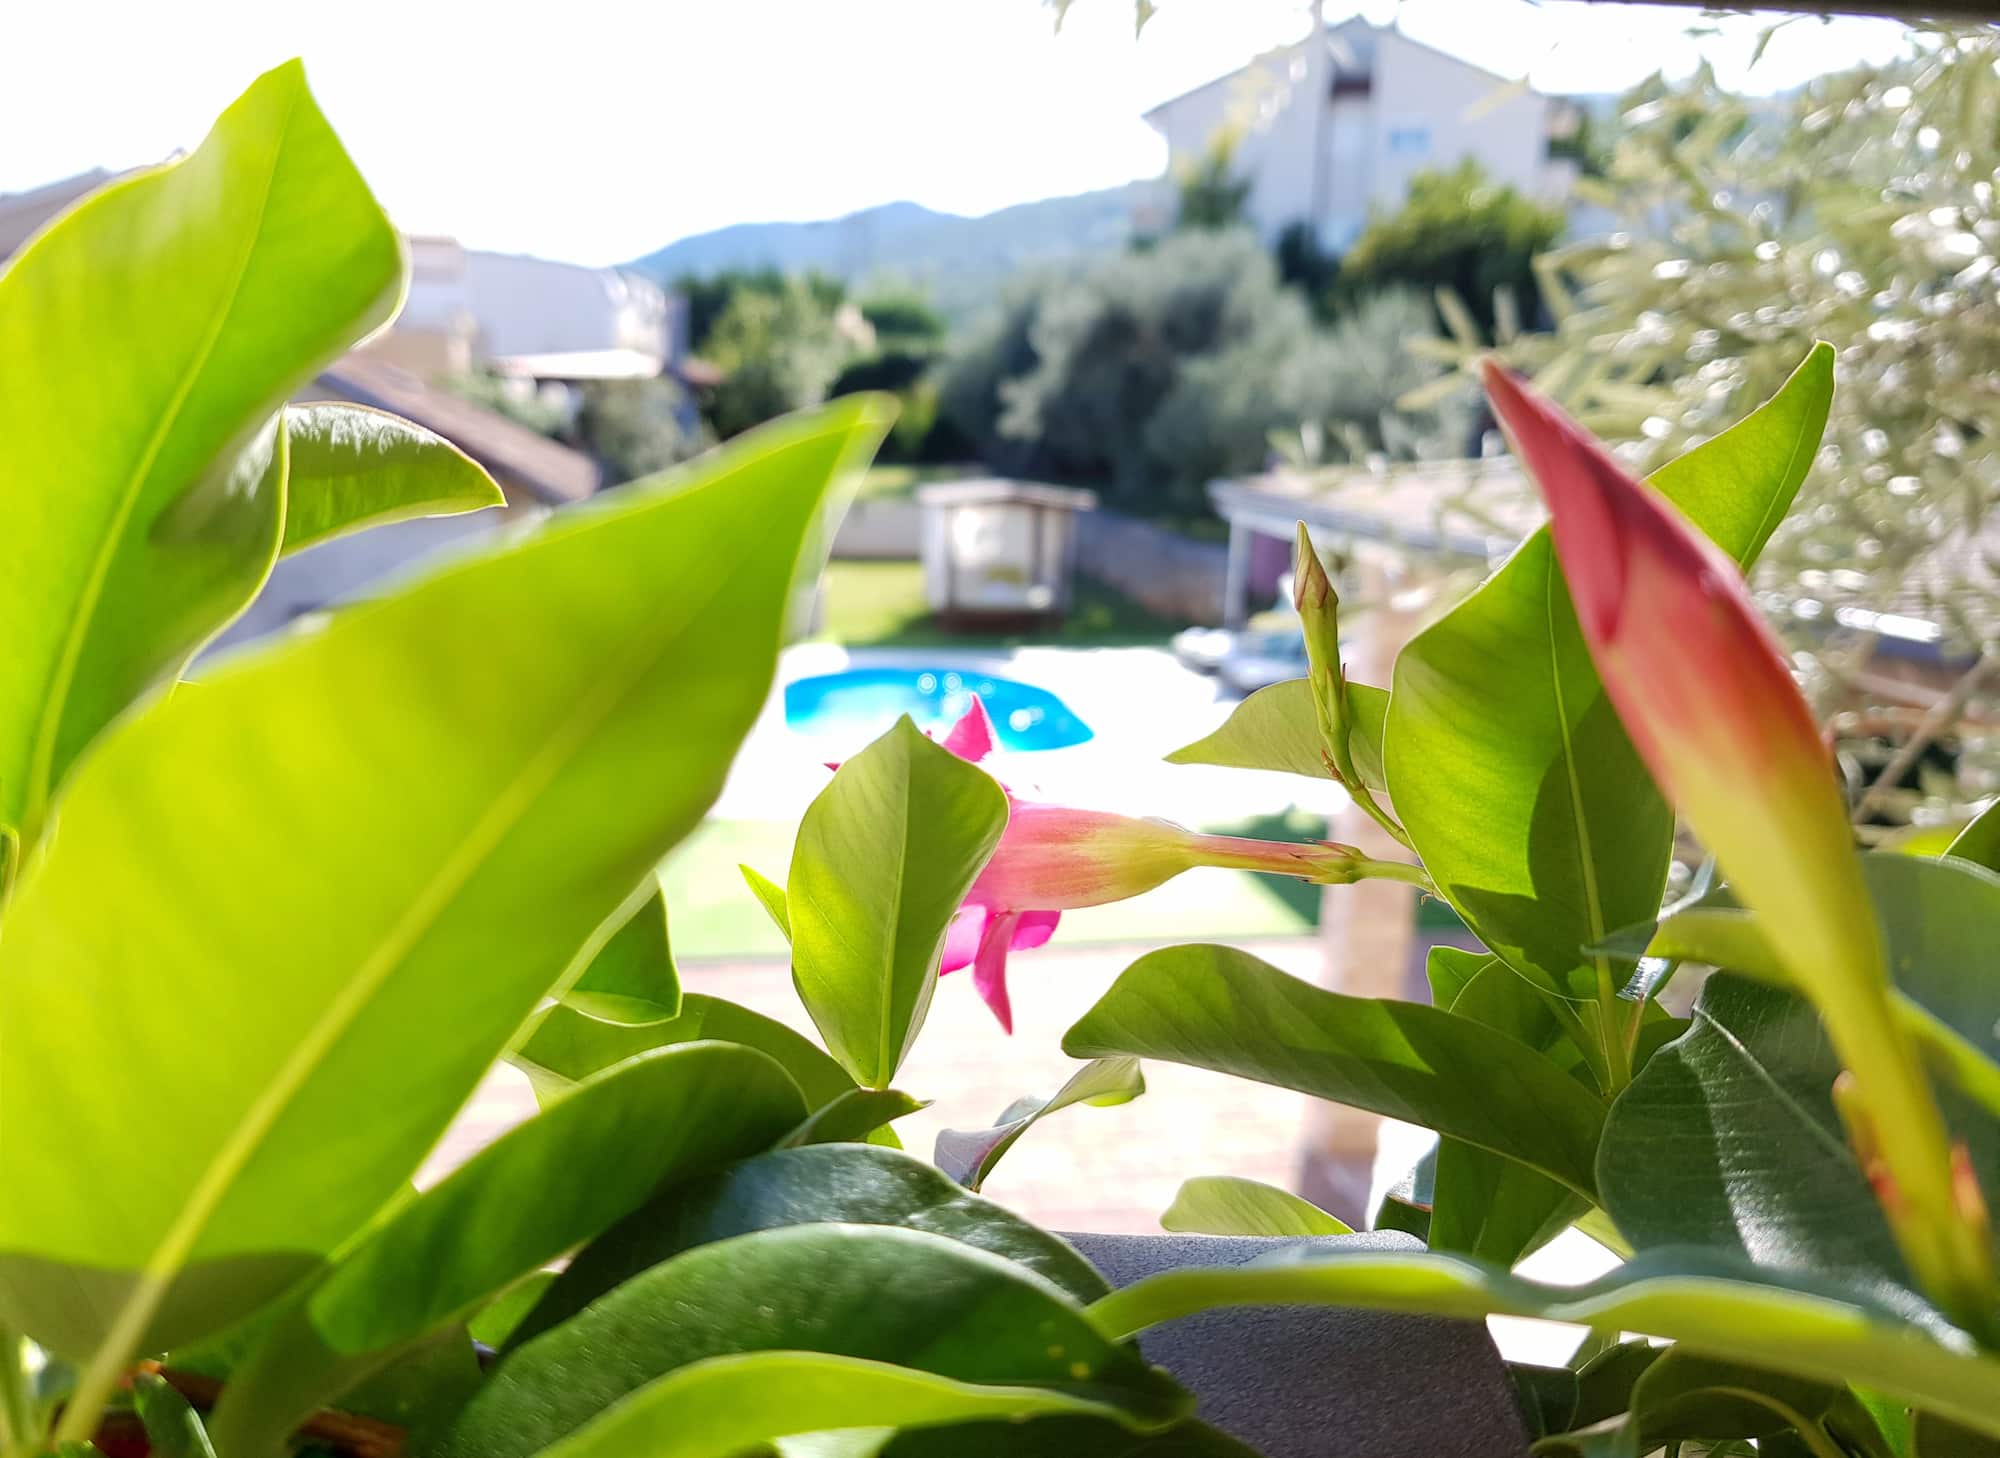 Ferienvilla mit Pool in Kroatien, Grünpflanze